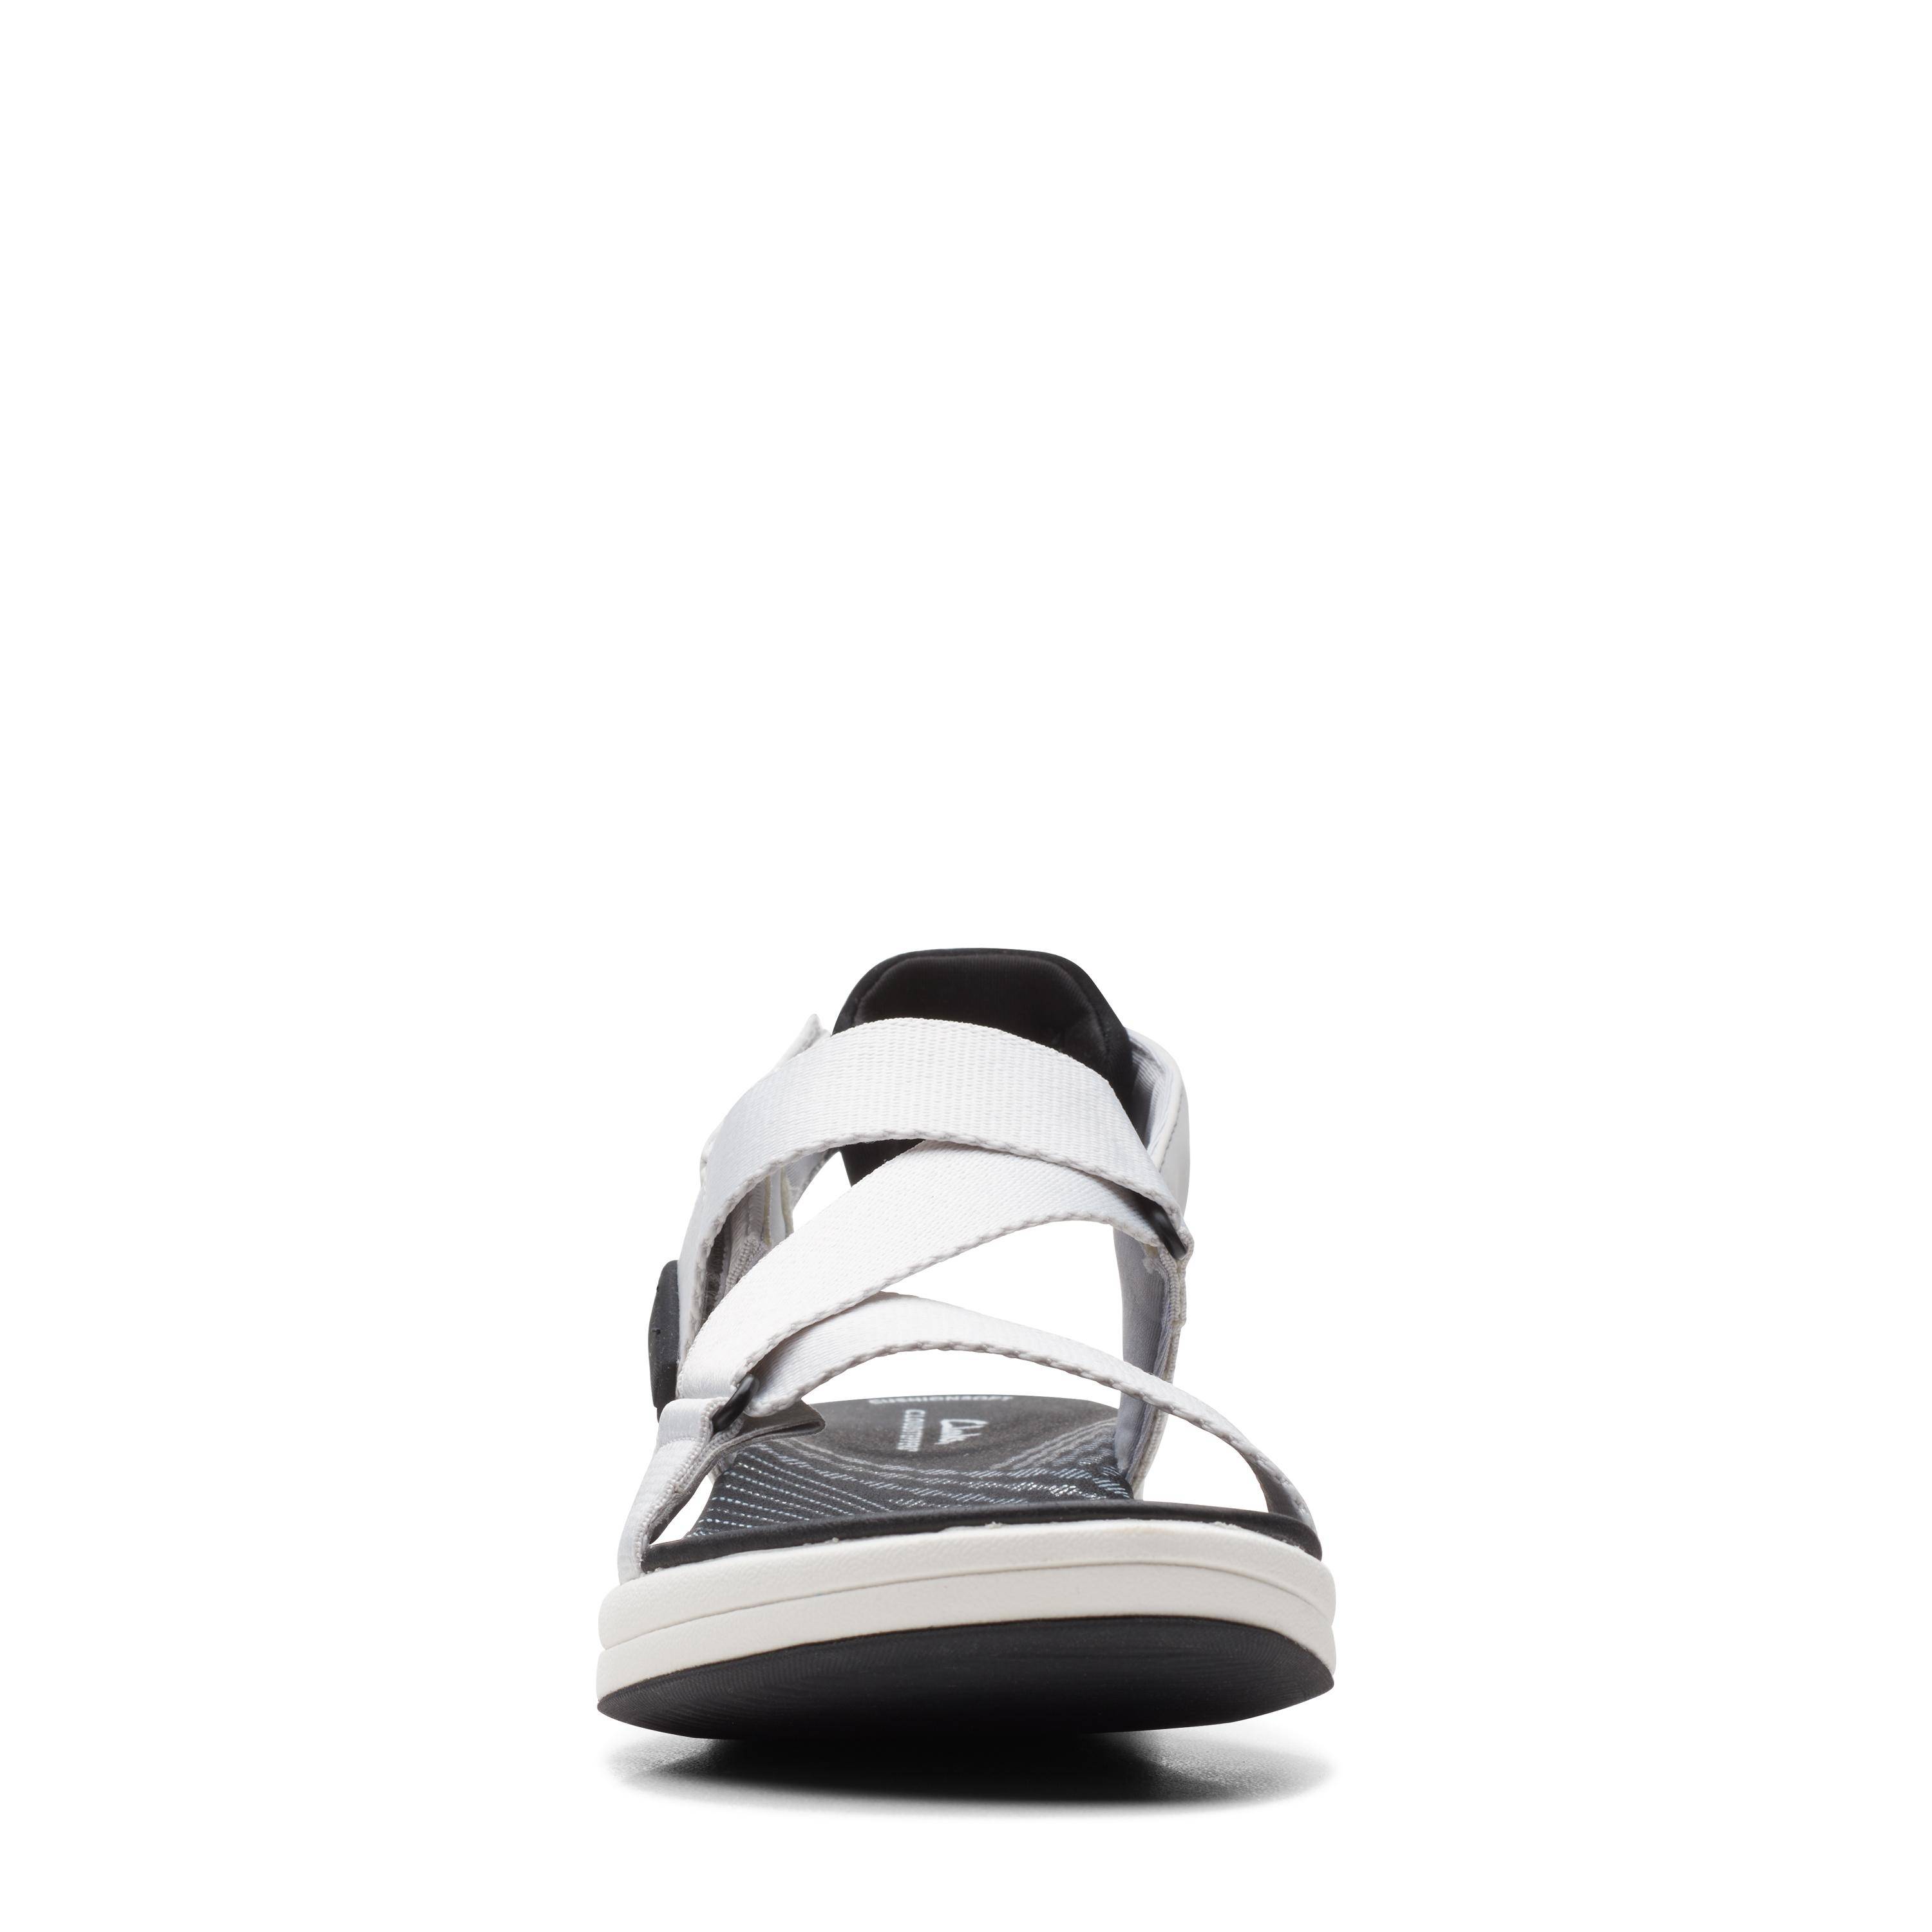 Женские сандалии Clarks (Mira Sun 26165339), серые, цвет серый, размер 39.5 - фото 3